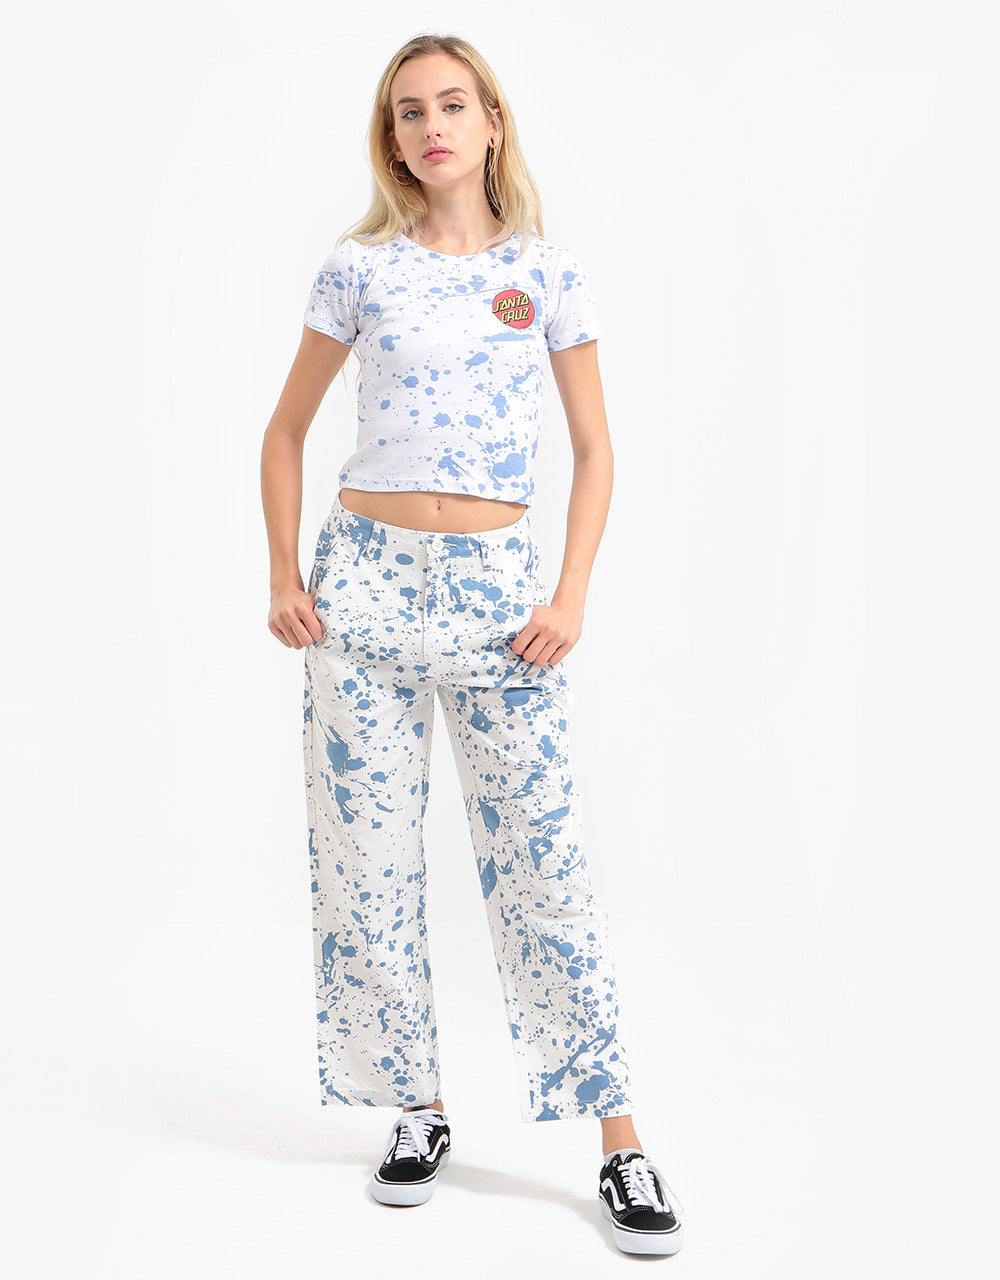 Santa Cruz Womens Kit T-Shirt - White/Blue